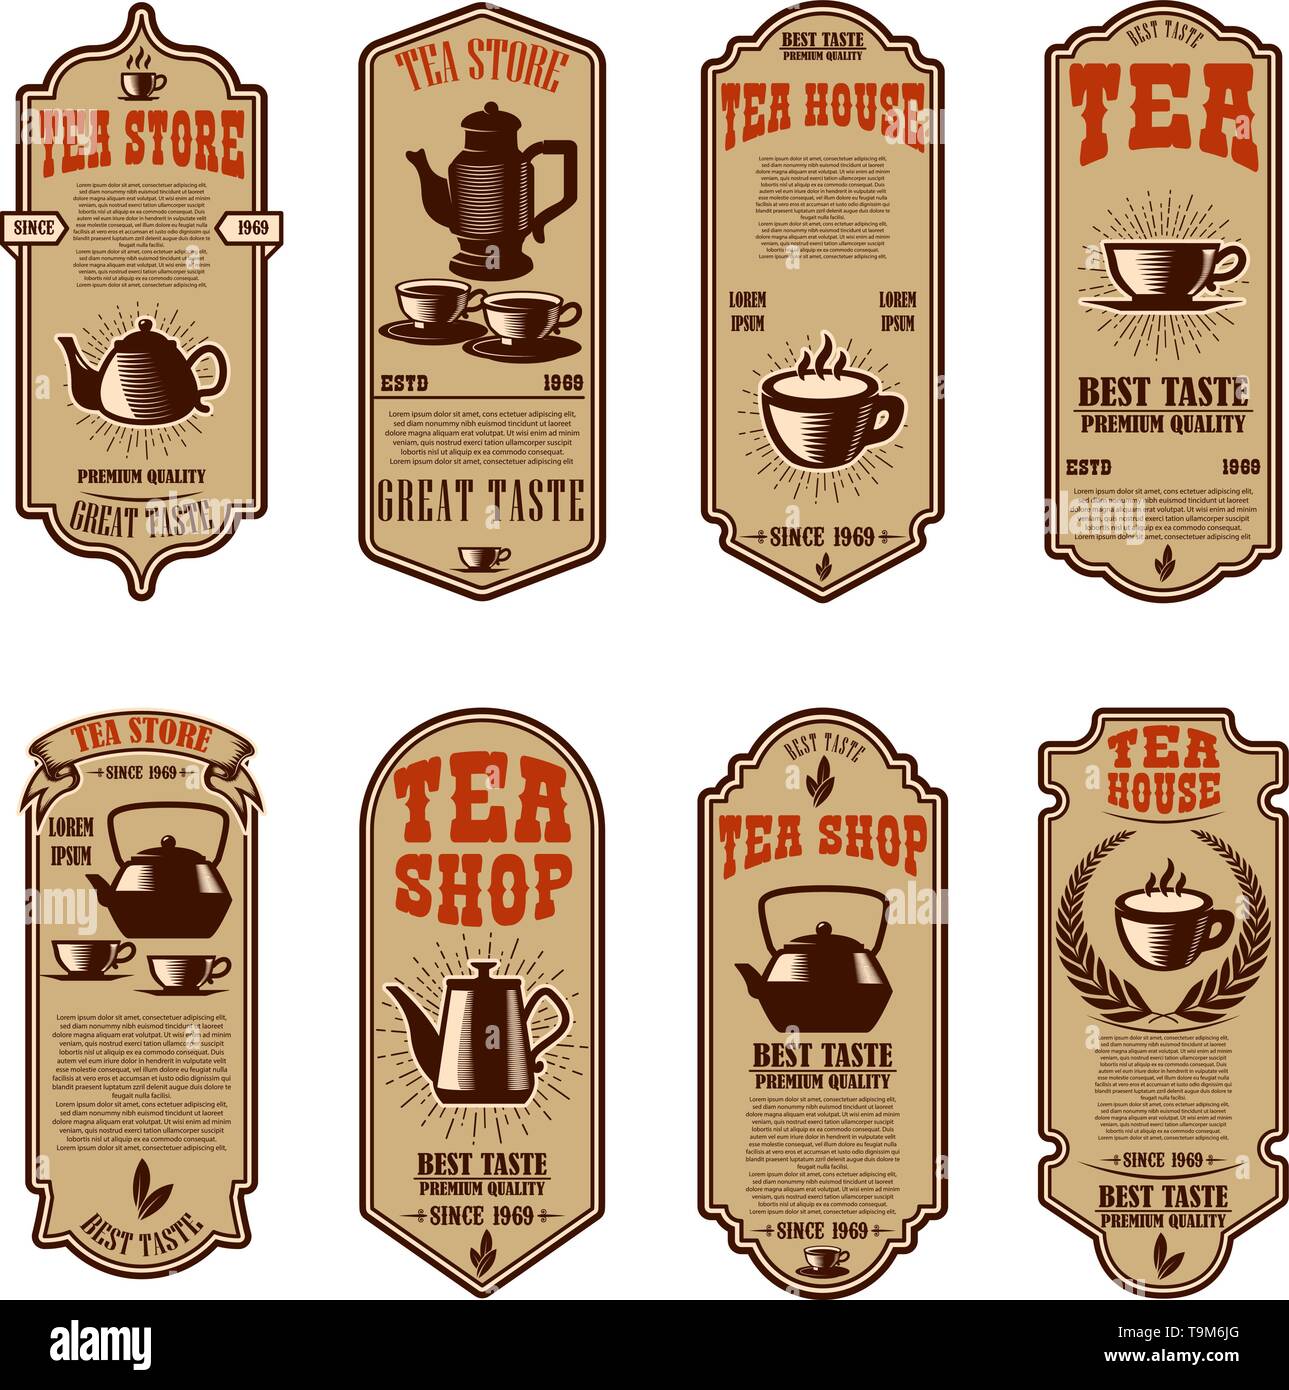 Vintage tea shop flyer templates. Design elements for logo, label, sign, badge. Vector illustration Stock Vector